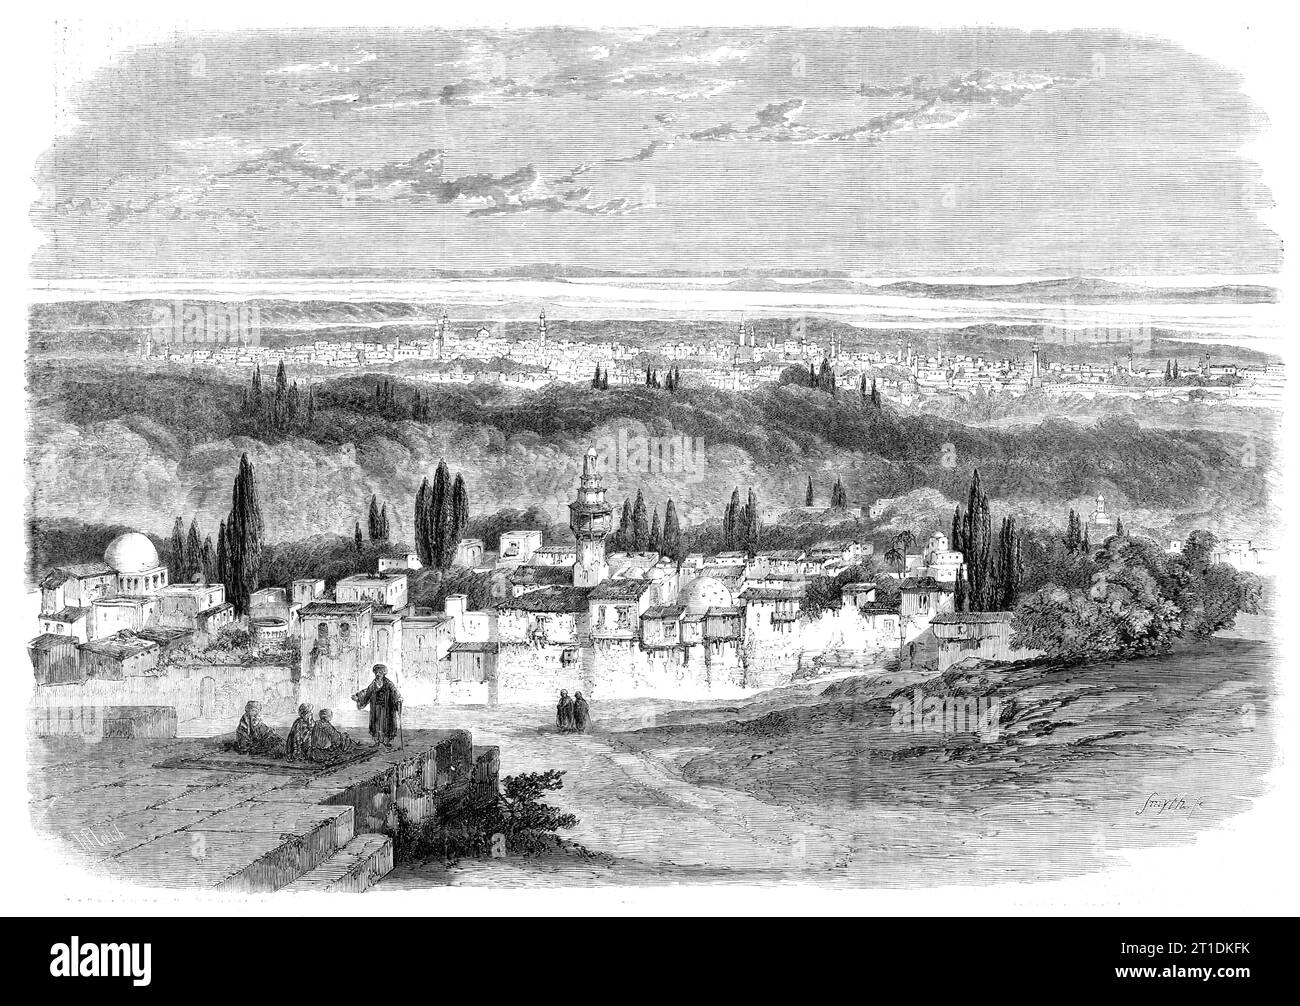 Veduta di Damasco dalla collina di Salahiyeh - da un disegno di E. Harker, 1860. Damasco... e' una delle prospettive piu' belle e suggestive del mondo, e, guardando da questo punto la splendida citta' racchiusa nella sua veste verdeggiante, possiamo apprezzare i sentimenti del profeta, il quale, volgendo dalle sue fascinazioni per cercare le sabbie arenate e le rocce ardenti della sua nativa Arabia, dichiarò Damasco "troppo delizioso" per la dimora dell'uomo. L’uomo, disse, poteva avere solo un paradiso, ed era saggio che non cercava il suo paradiso sulla terra”. Da "Illustrated London News&quo Foto Stock